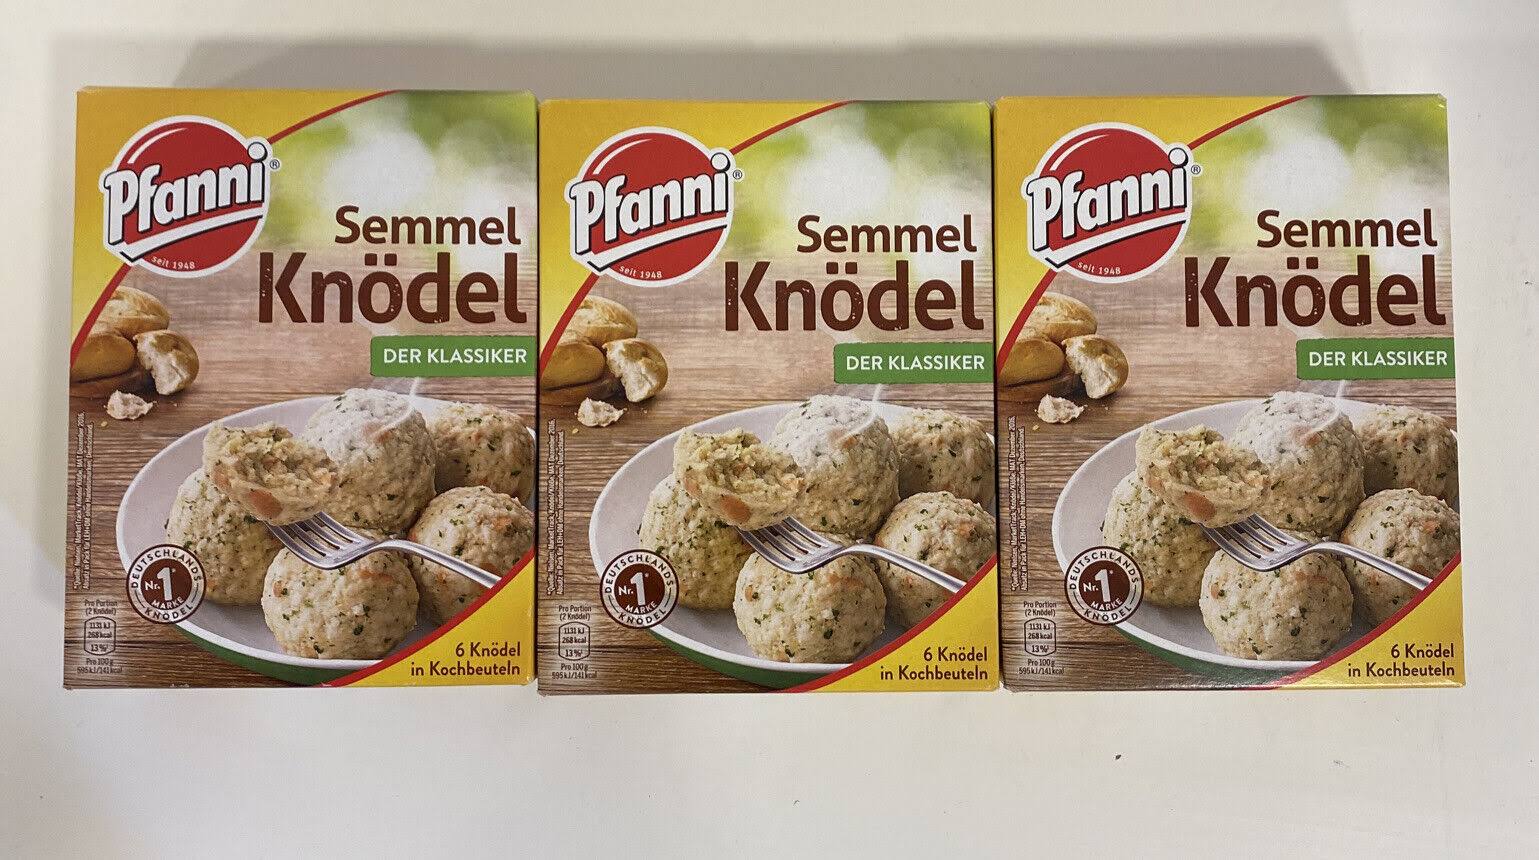 3x Pfanni Semmel dumpl The Classic 3x 200g each 6 cooking bags € 18.17/kg